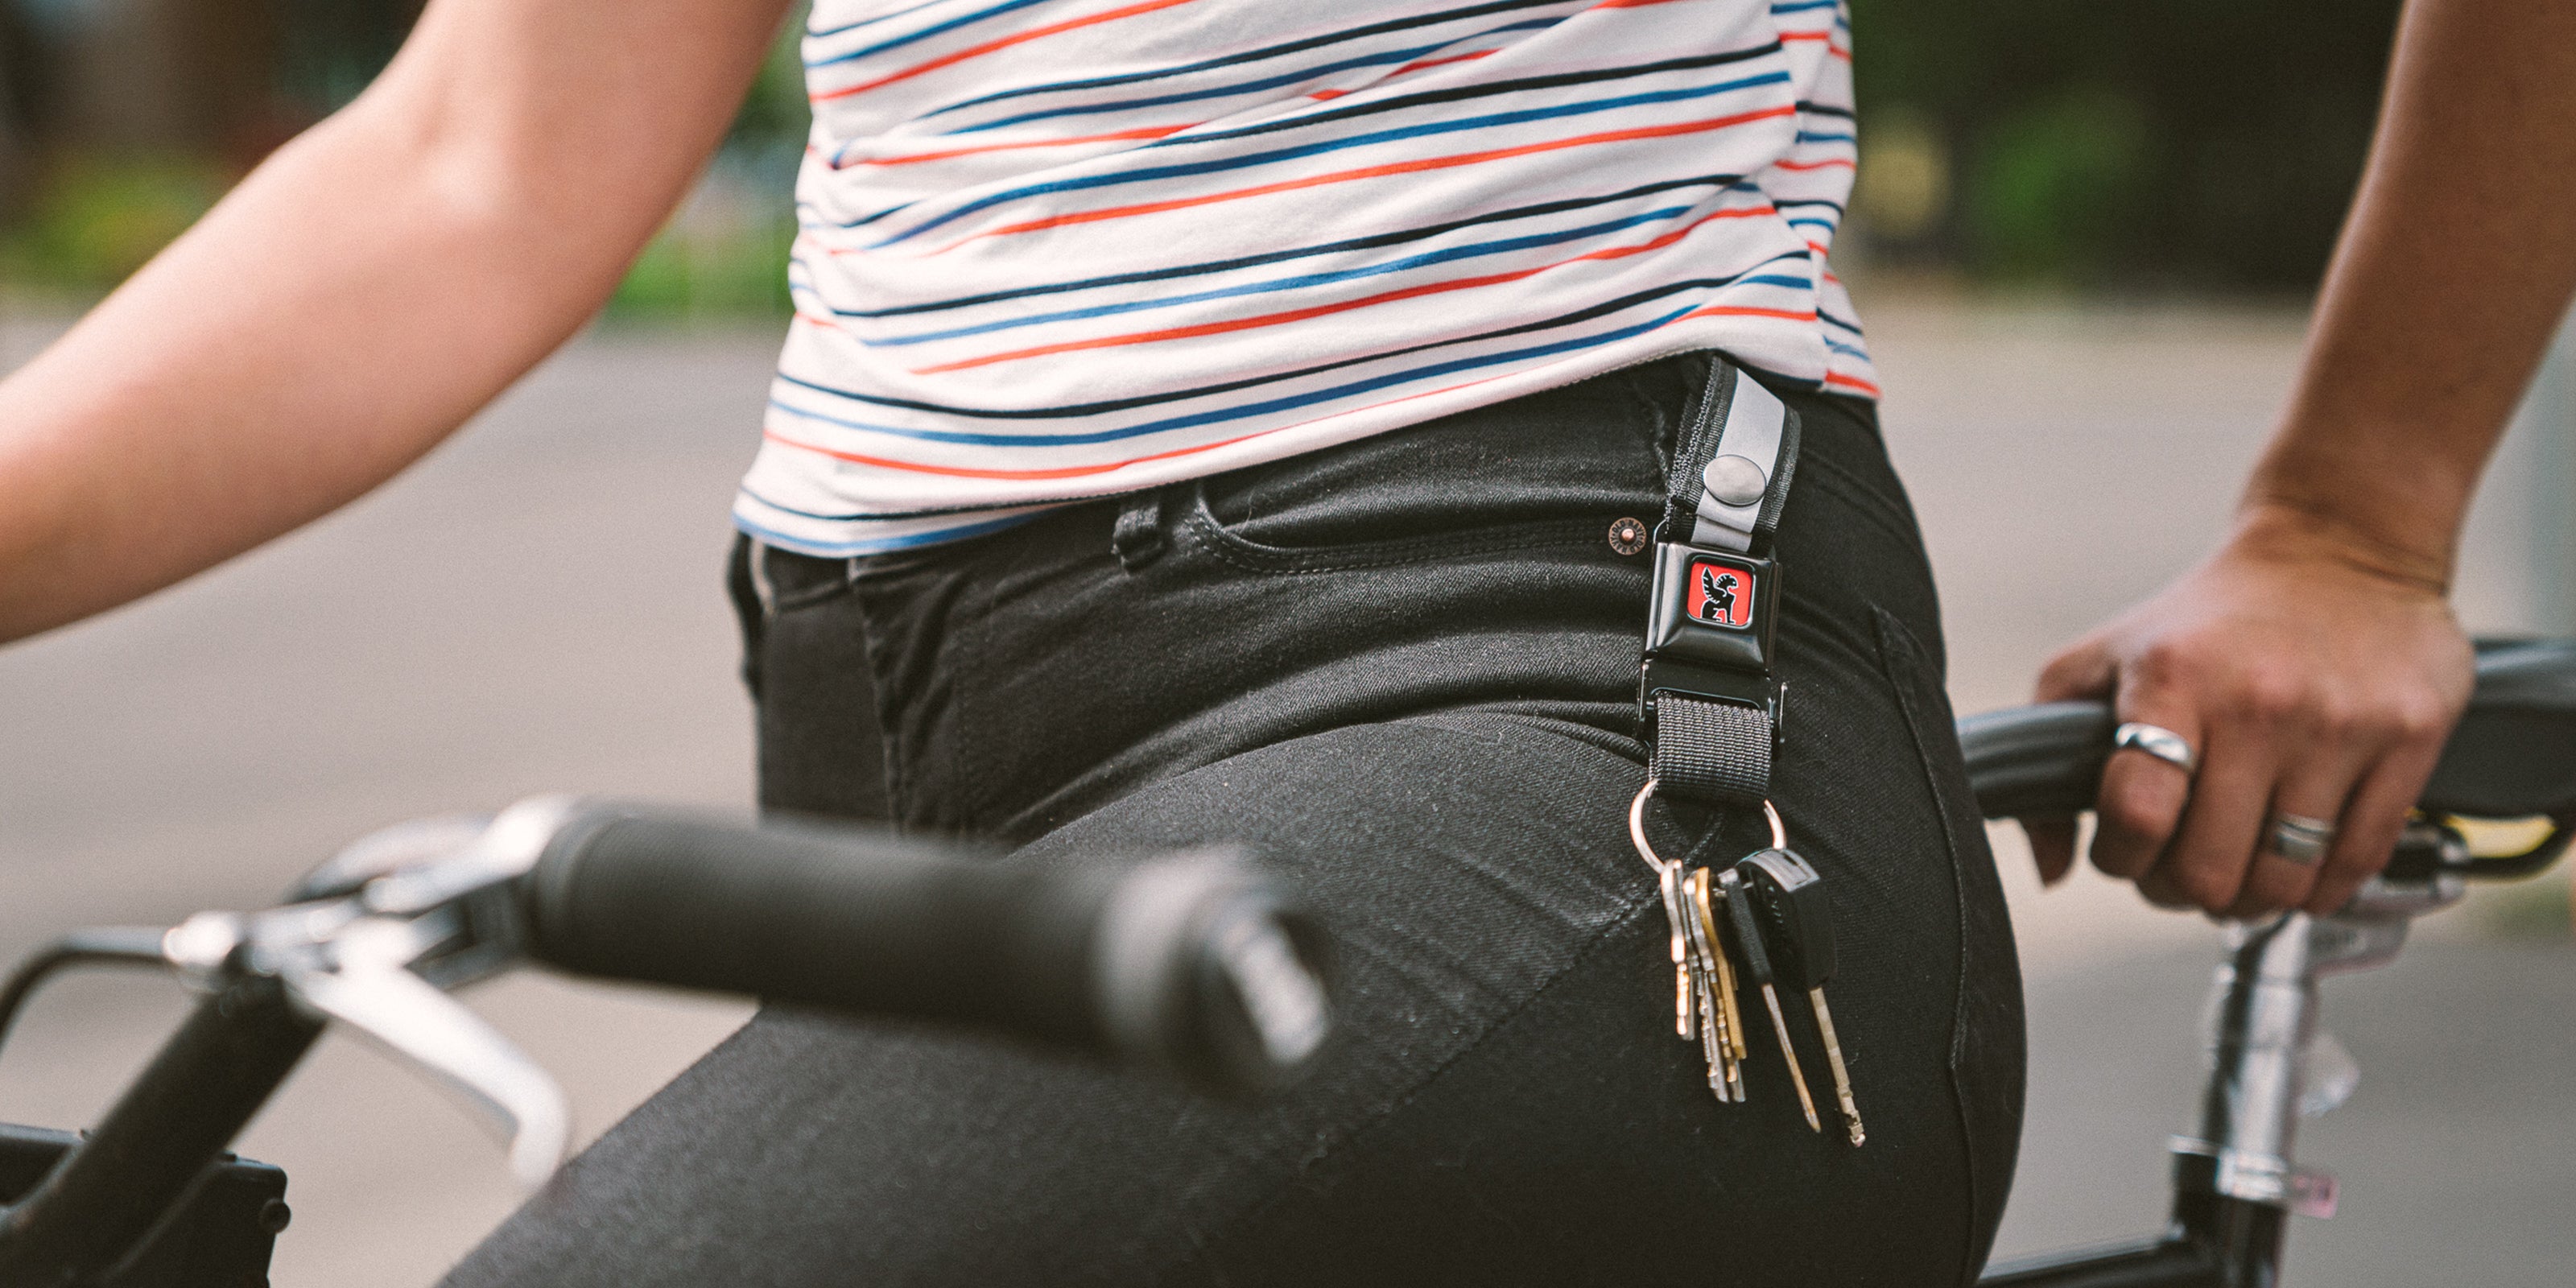 Mini Buckle Keychain worn by a woman on her belt loop desktop size image